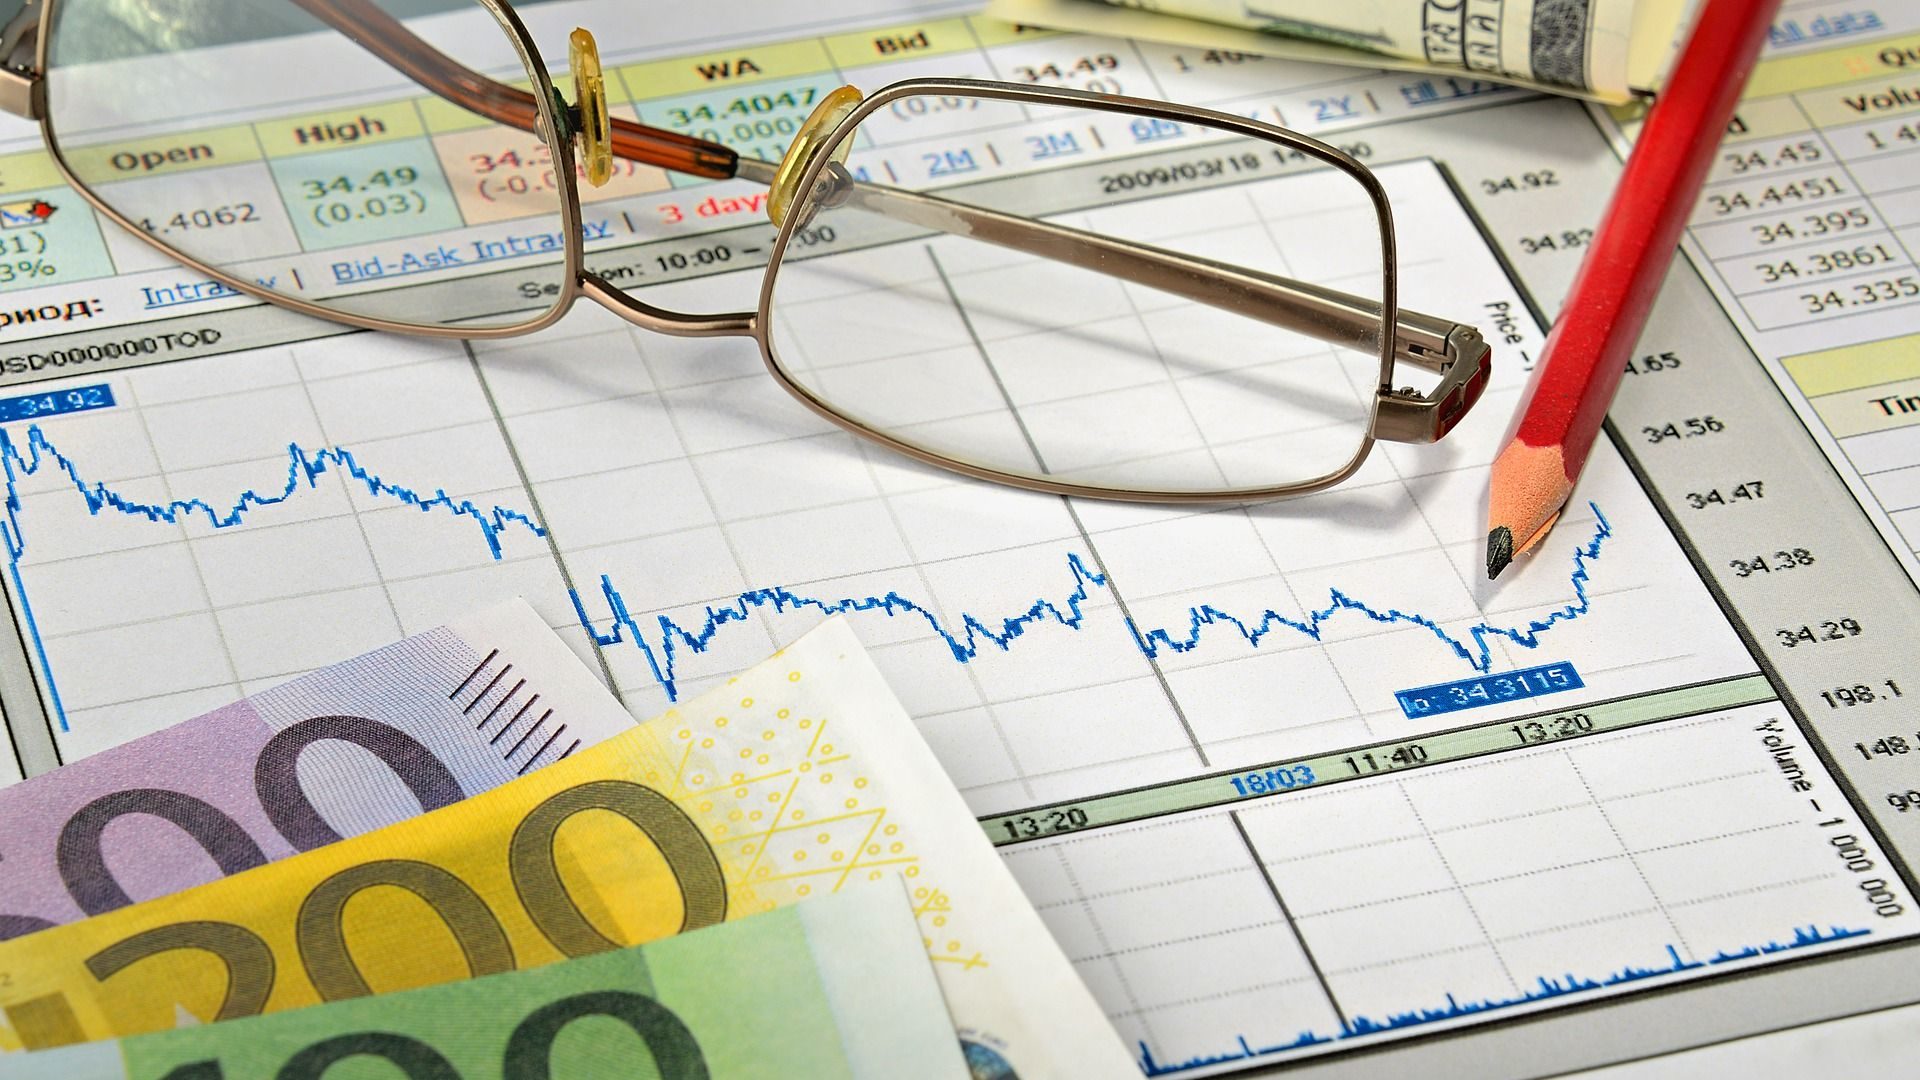 Provizní poradenství - peníze - bankovky - eura - graf - investice - brýle